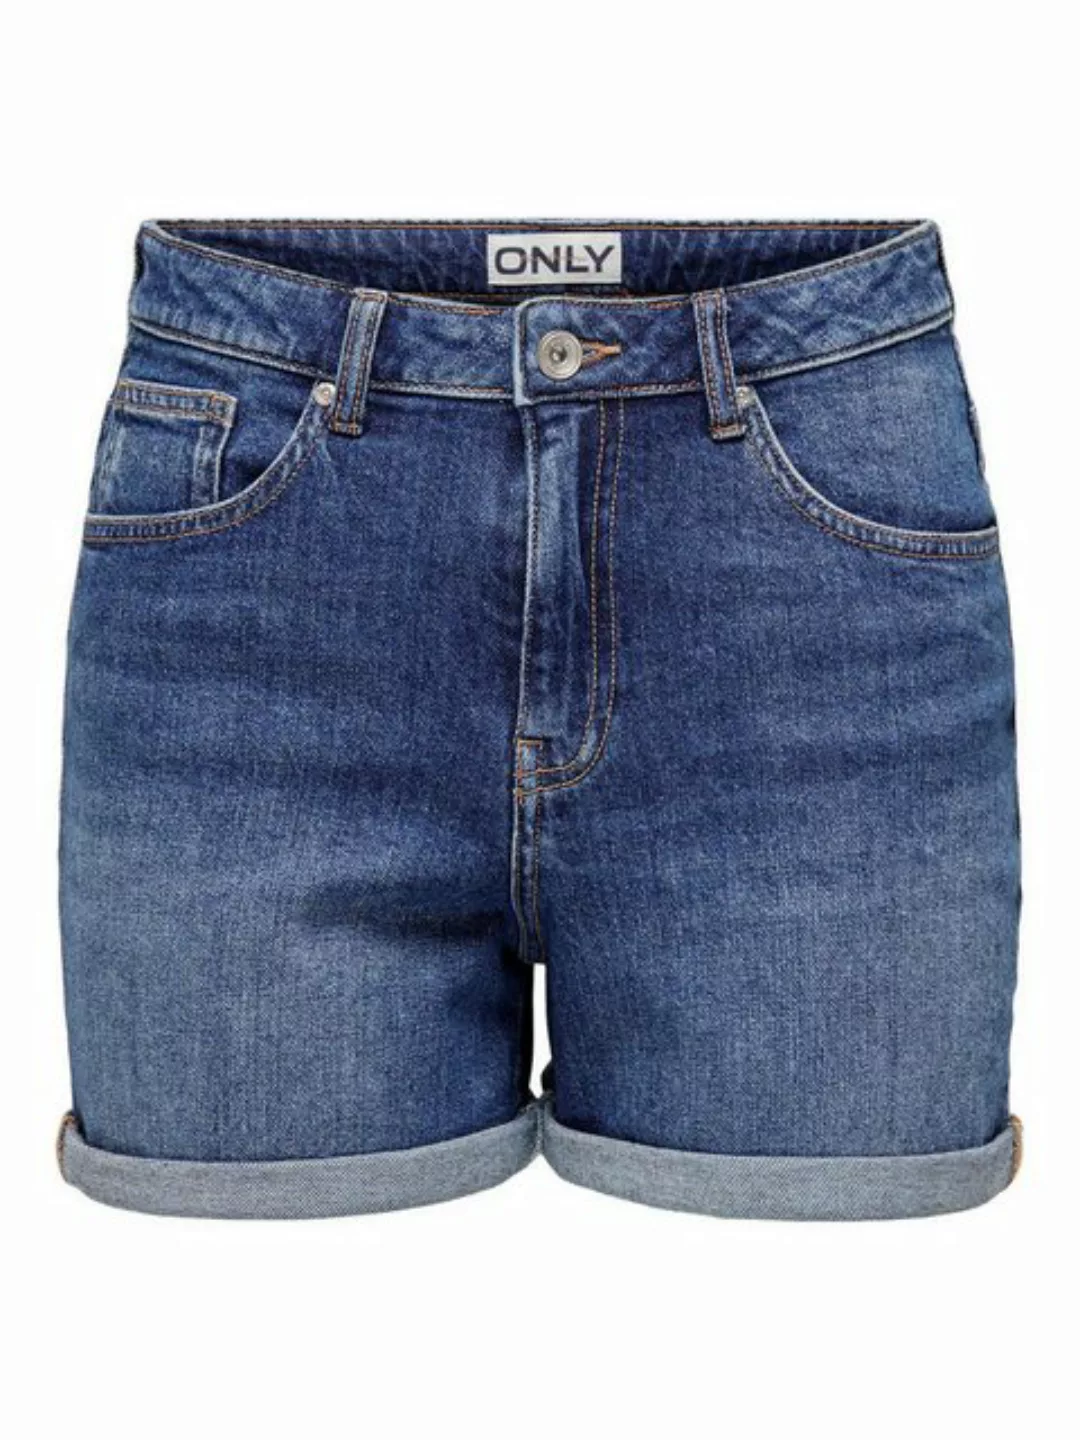 ONLY Jeansshorts Shorts Denim Bermudas High Waist 7684 in Blau-3 günstig online kaufen